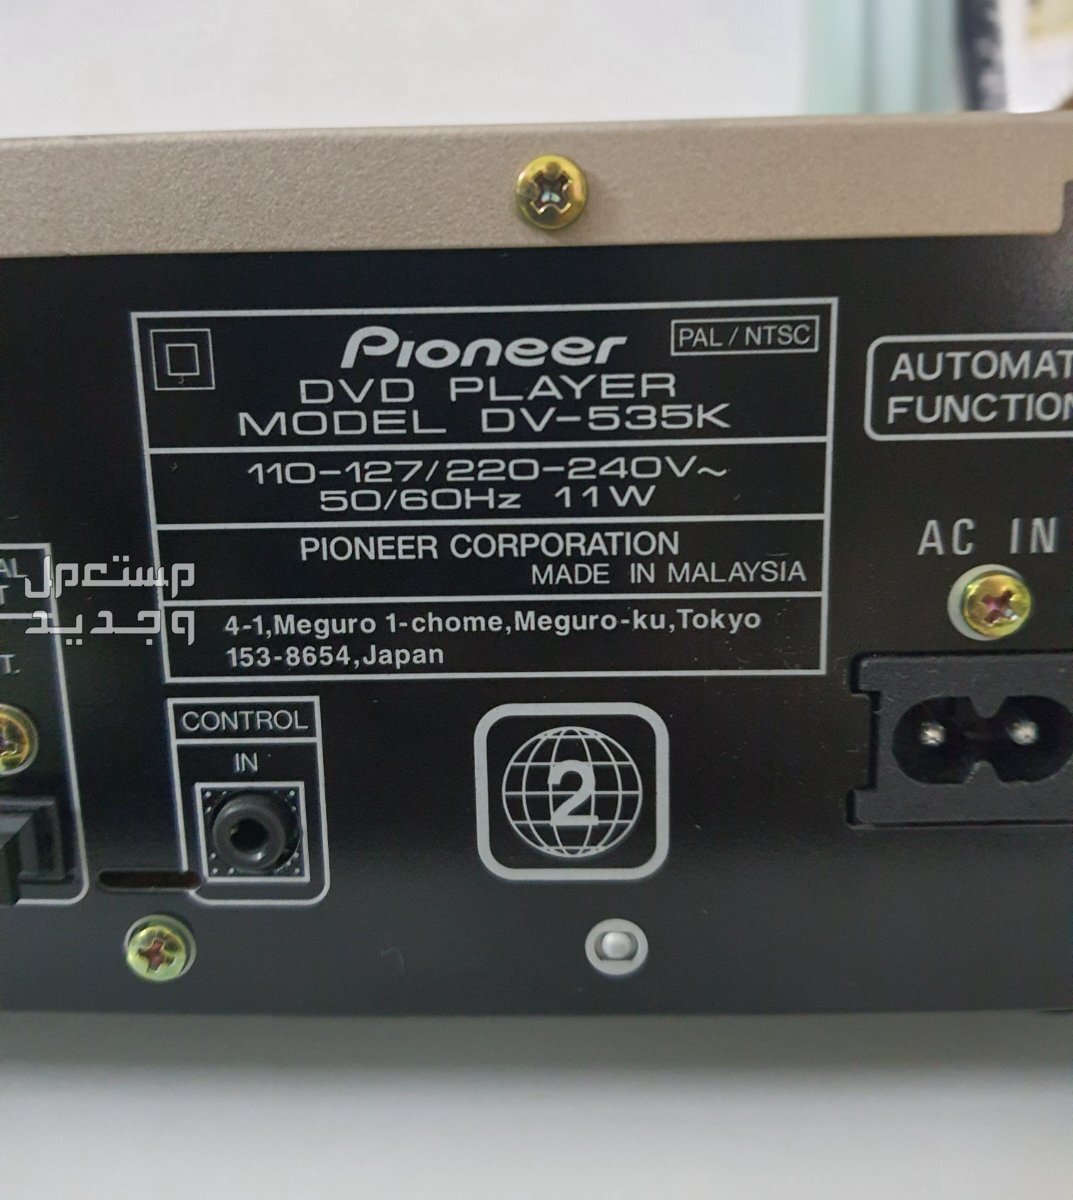 دي في دي SONY سوني - Pioneer بايونير - Panasonic باناسونيك